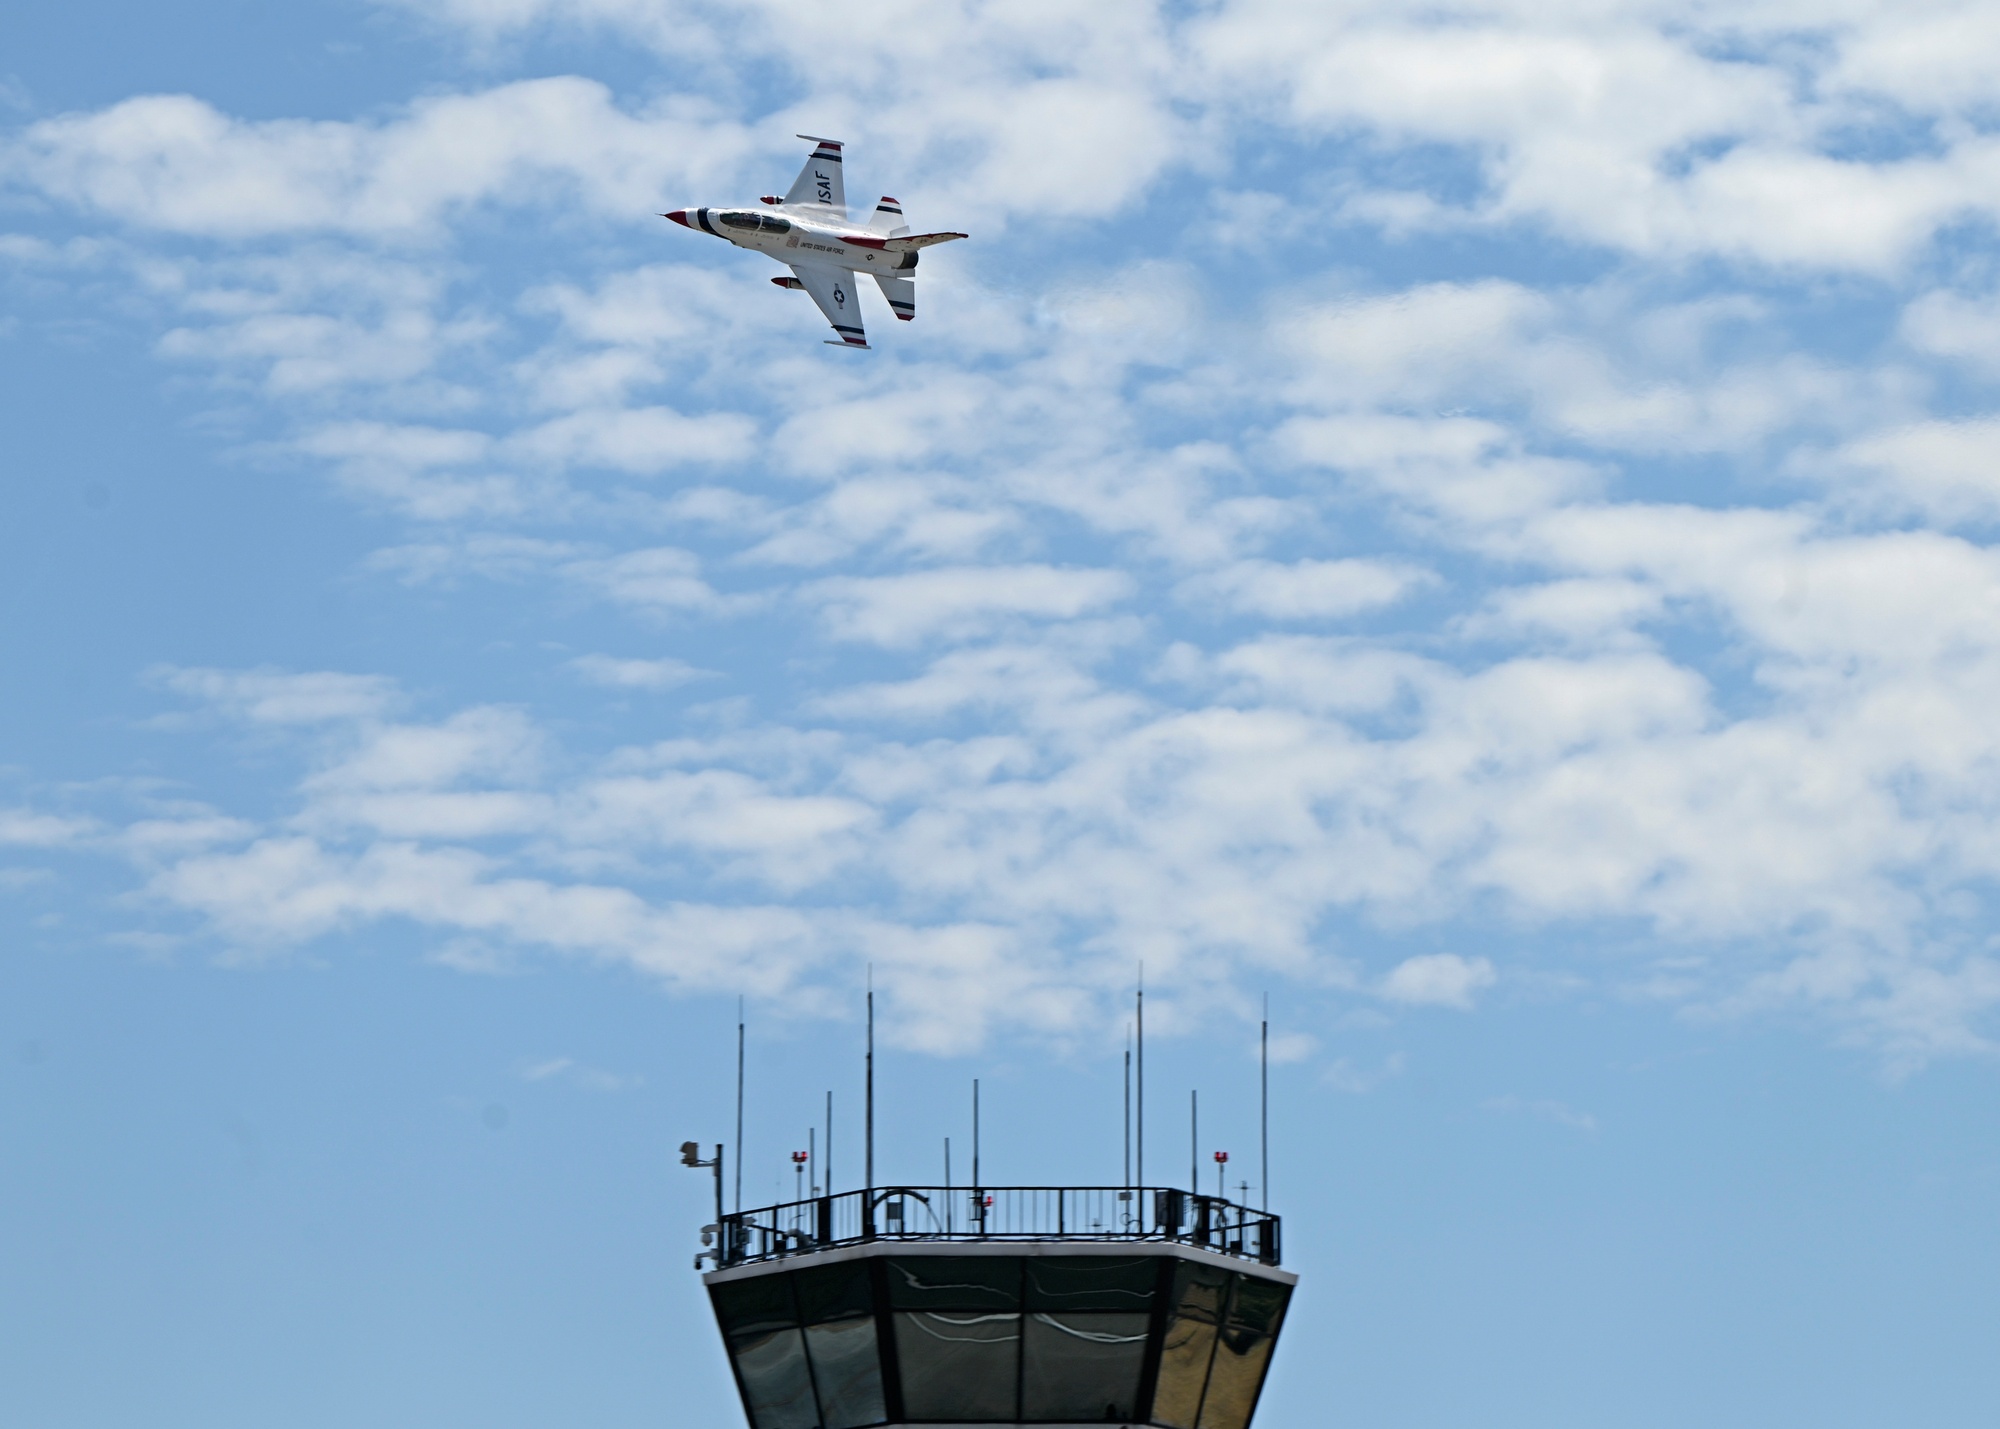 US Air Force Thunderbirds arrive ahead of JBLM airshow this weekend